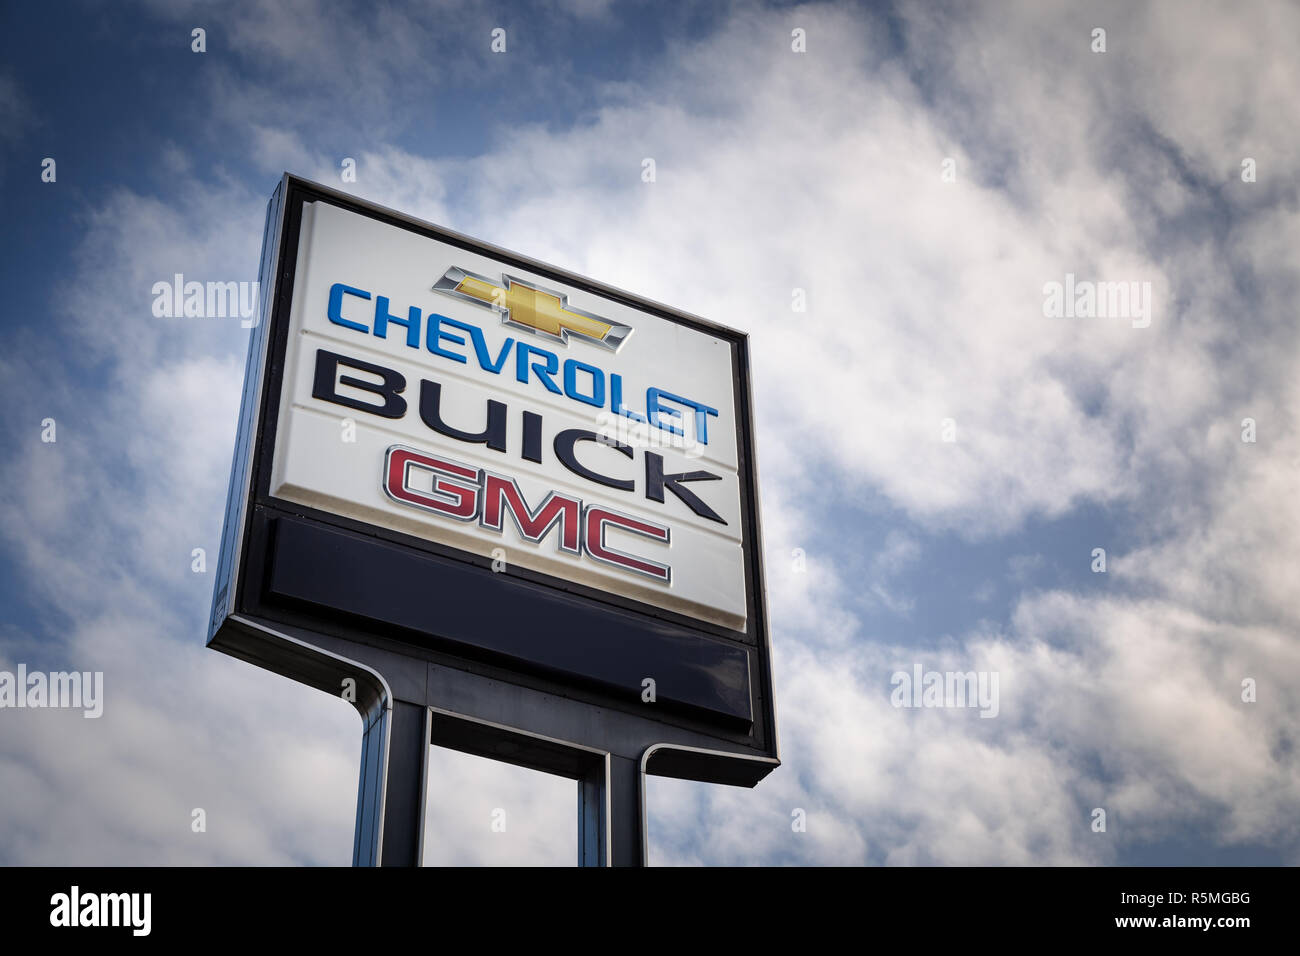 VANCOUVER, BC, Canada - Nov 29, 2018: Un General Motors concessionaria segno nei giorni dopo l'annuncio della GM di chiusure di impianti in Nord Americ Foto Stock